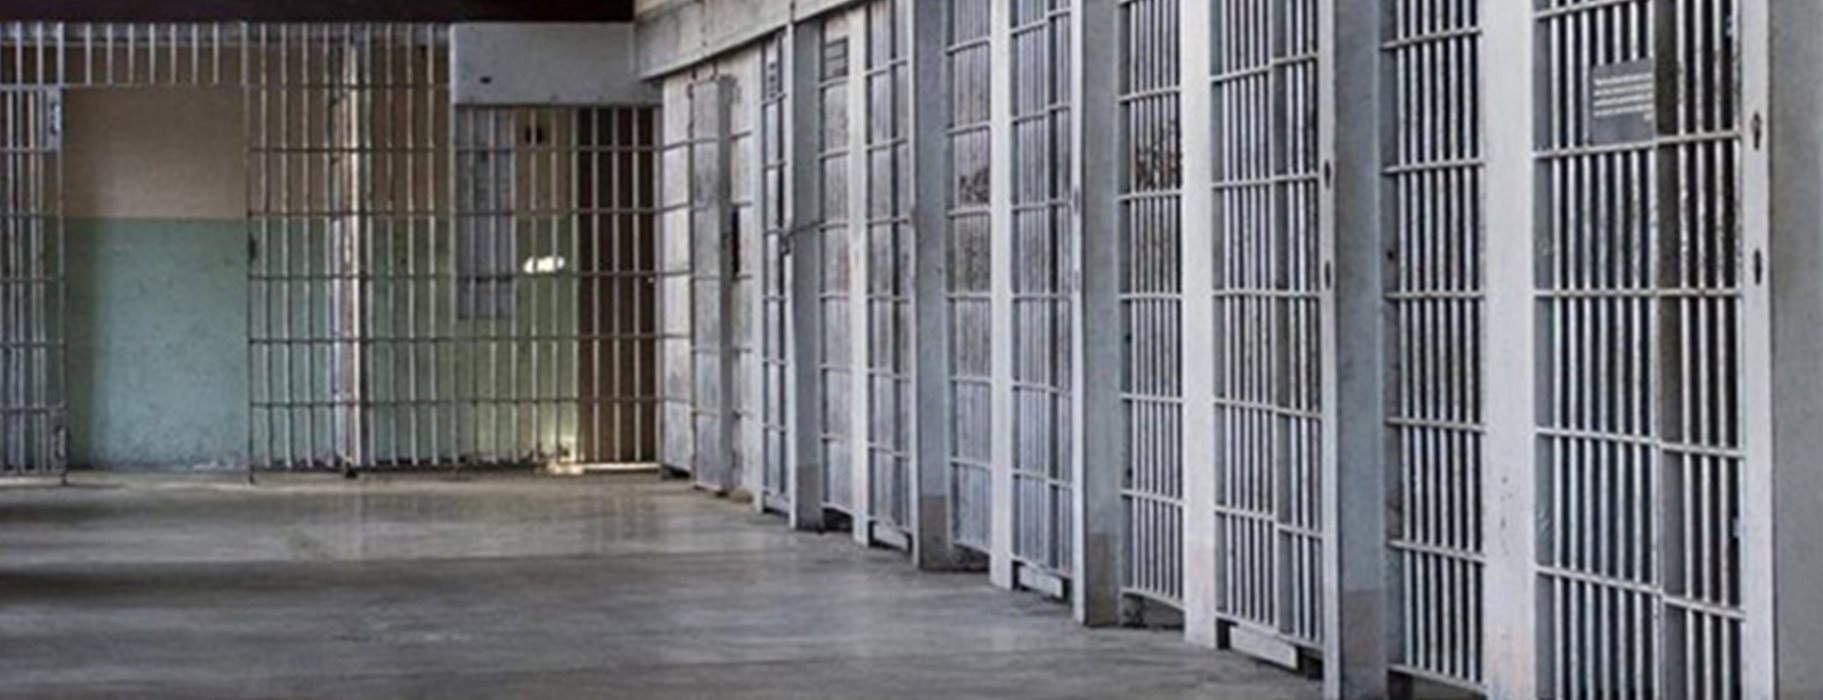 «Λαβράκι» έβγαλε η έρευνα στις φυλακές Χανίων και Νιγρίτας – Βρέθηκαν αυτοσχέδια μαχαίρια, κινητά τηλέφωνα και χάπια